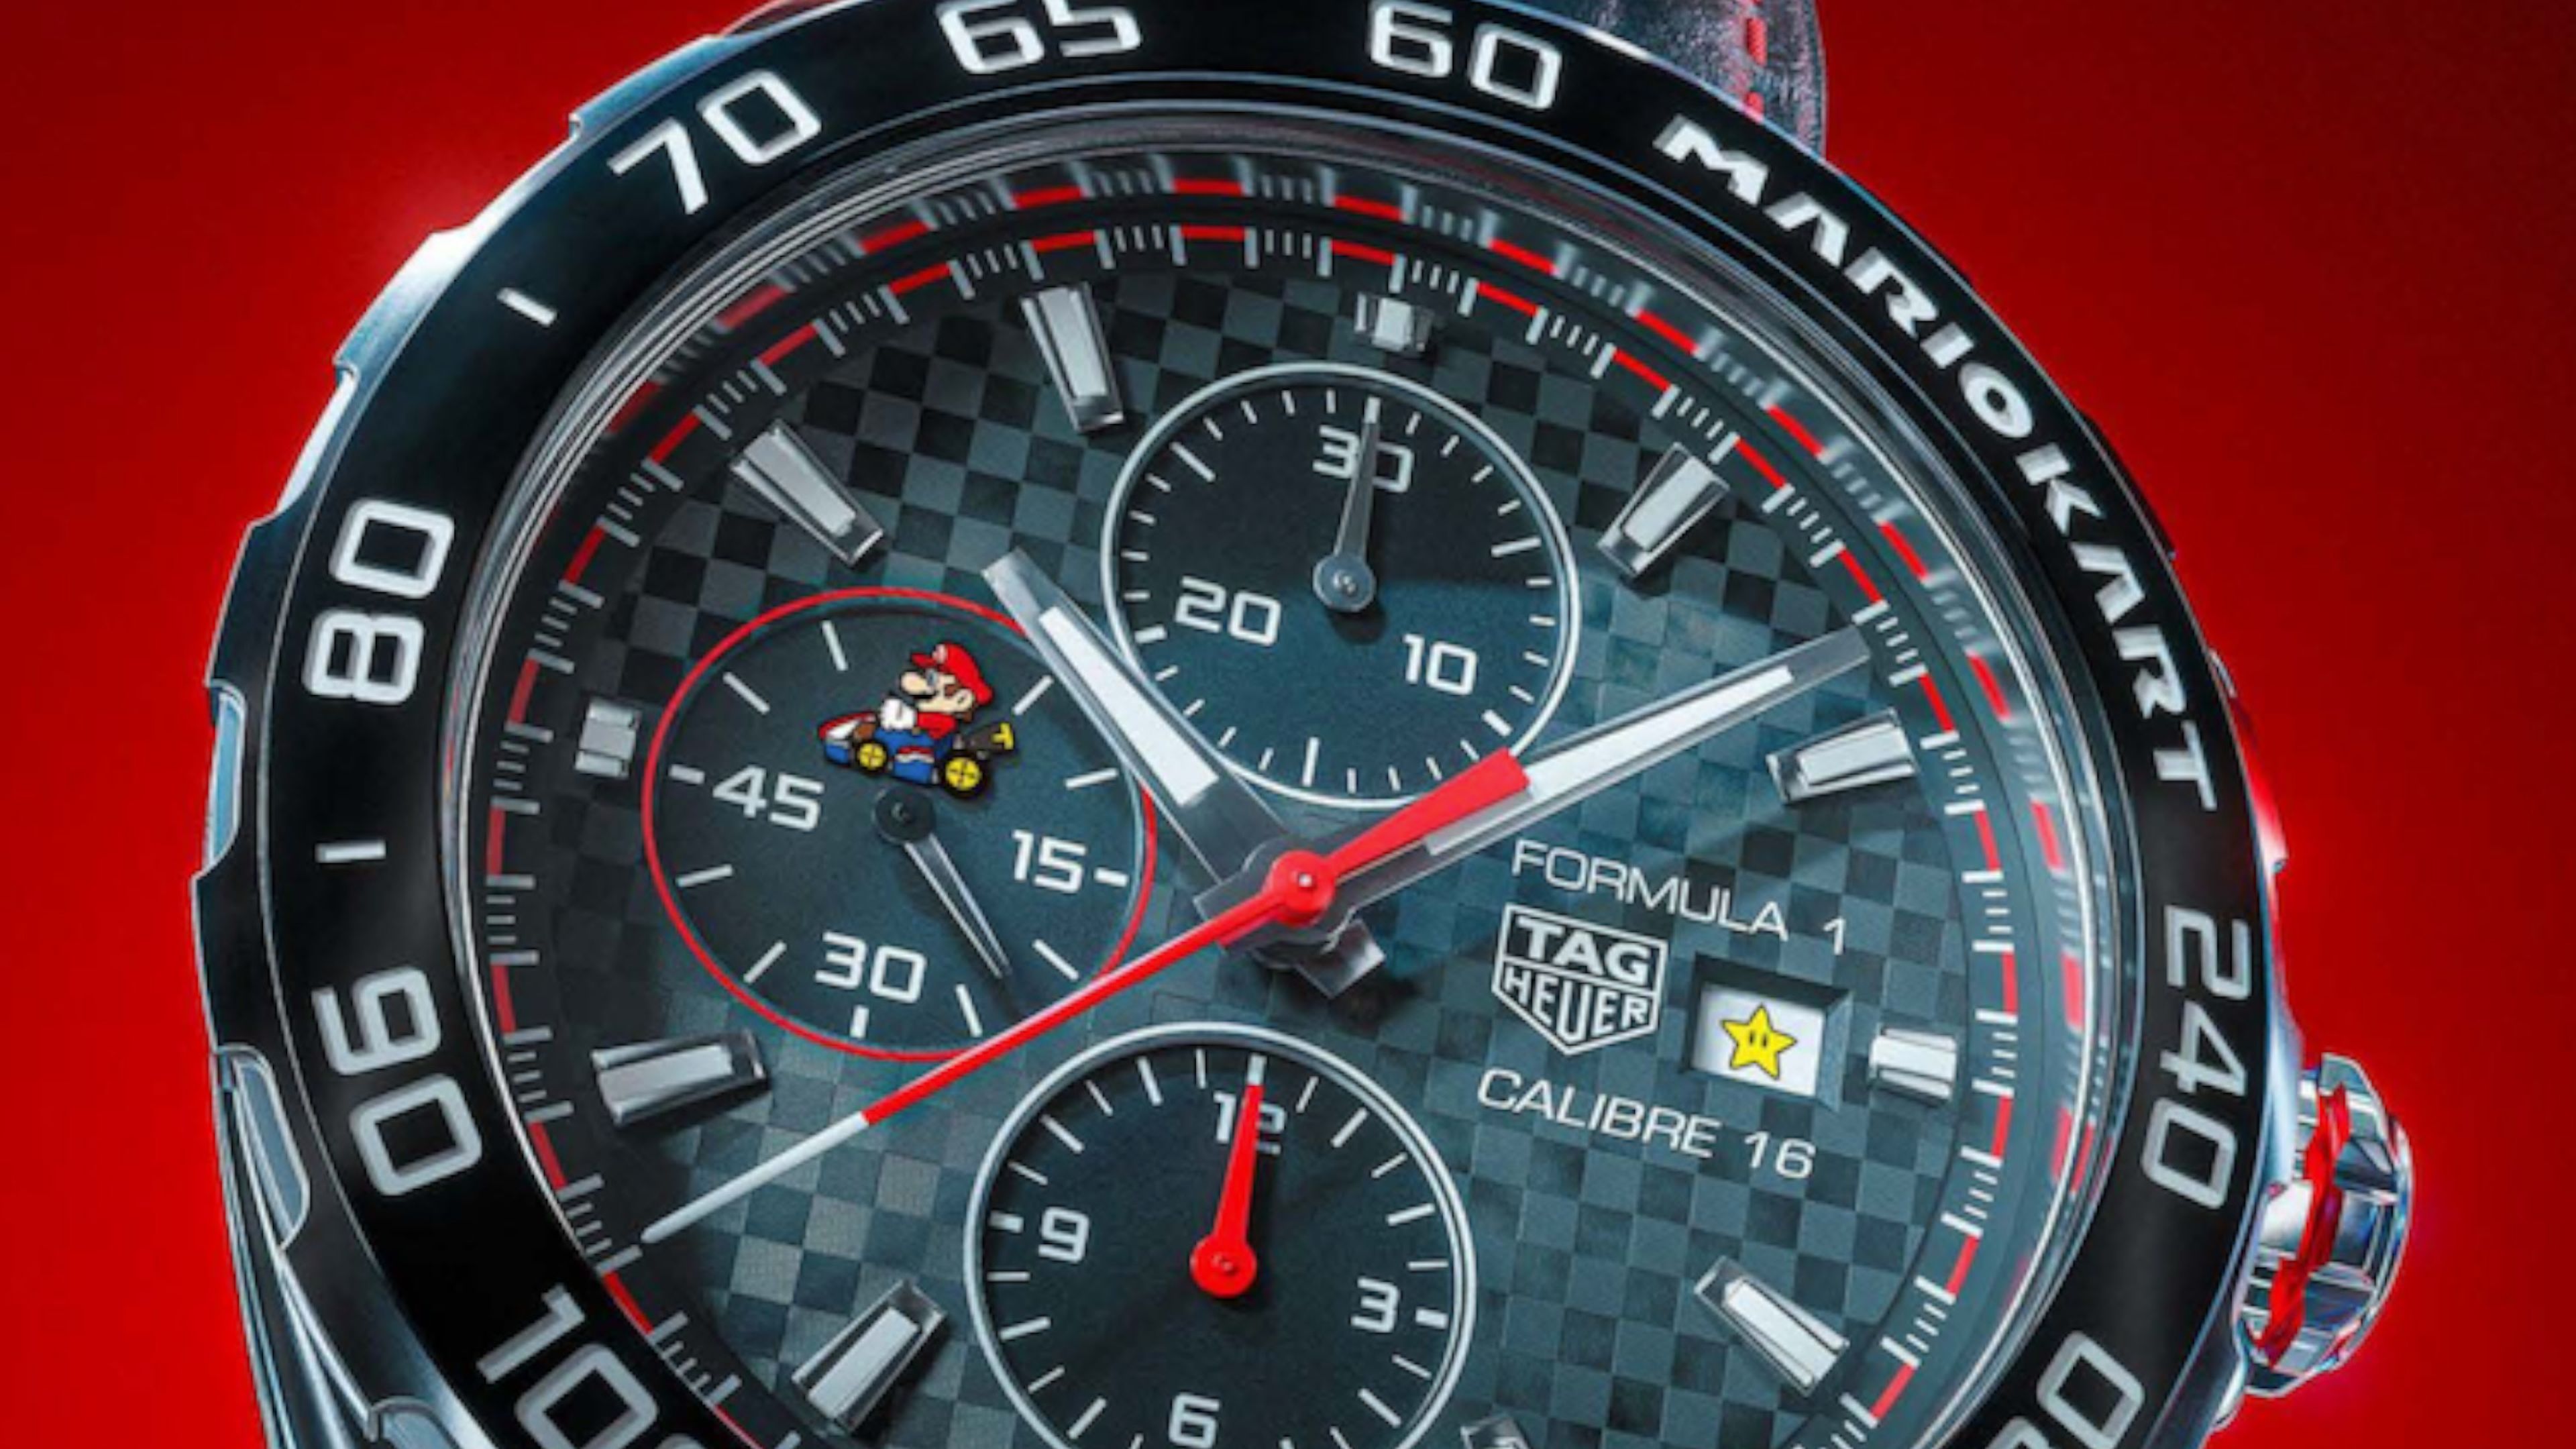 Tag Heuer venderá un reloj de lujo Mario Kart que cuesta 25.000 dólares | Hobby